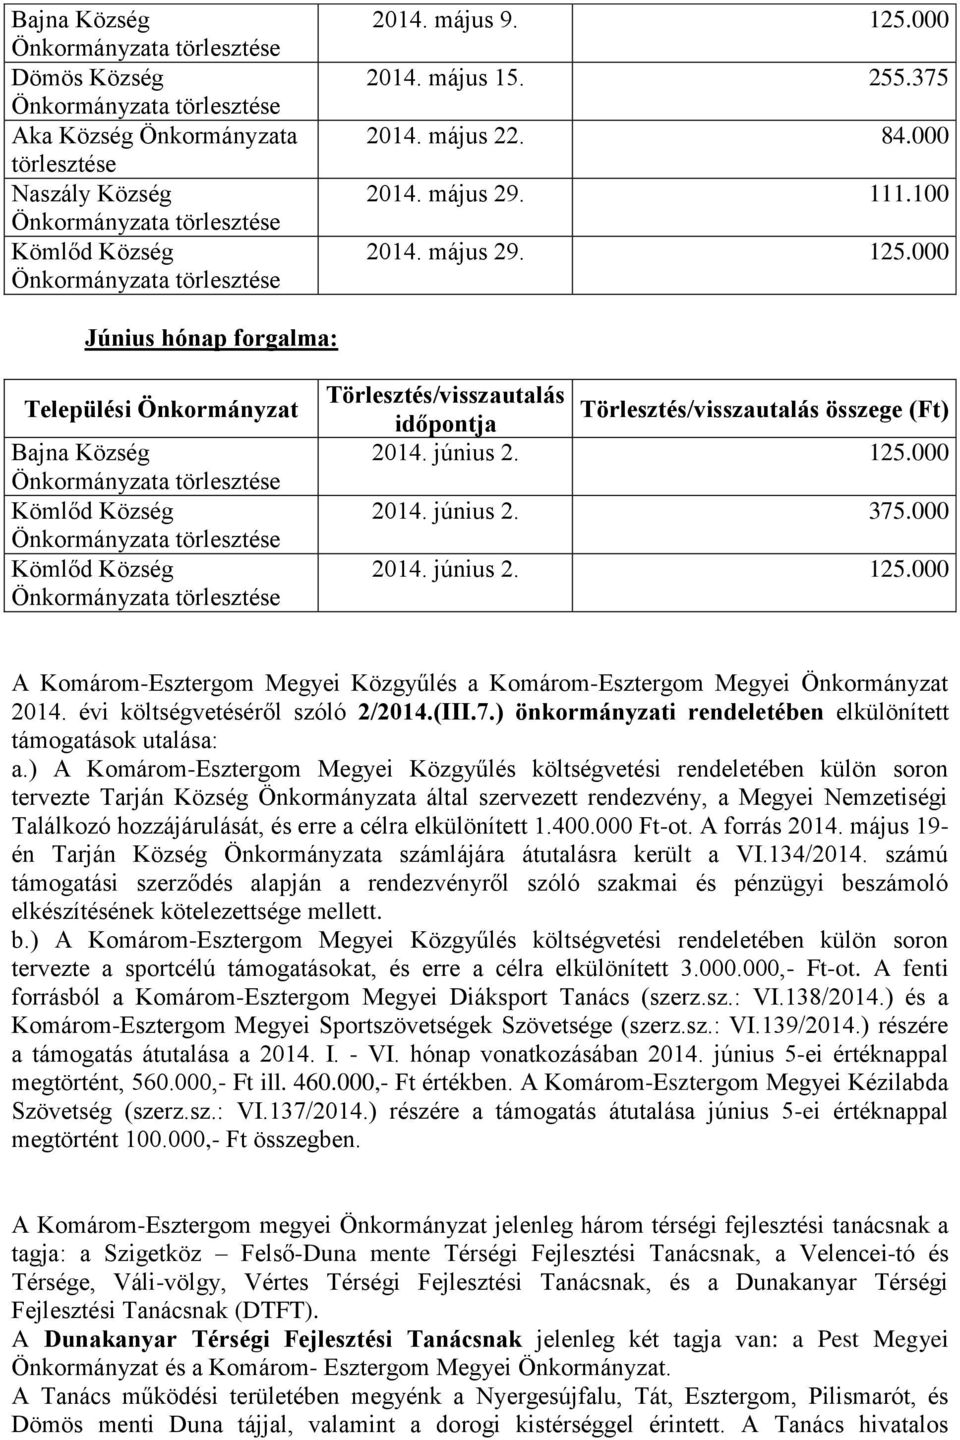 június 2. 375.000 2014. június 2. 125.000 A Komárom-Esztergom Megyei Közgyűlés a Komárom-Esztergom Megyei Önkormányzat 2014. évi költségvetéséről szóló 2/2014.(III.7.) önkormányzati rendeletében elkülönített támogatások utalása: a.